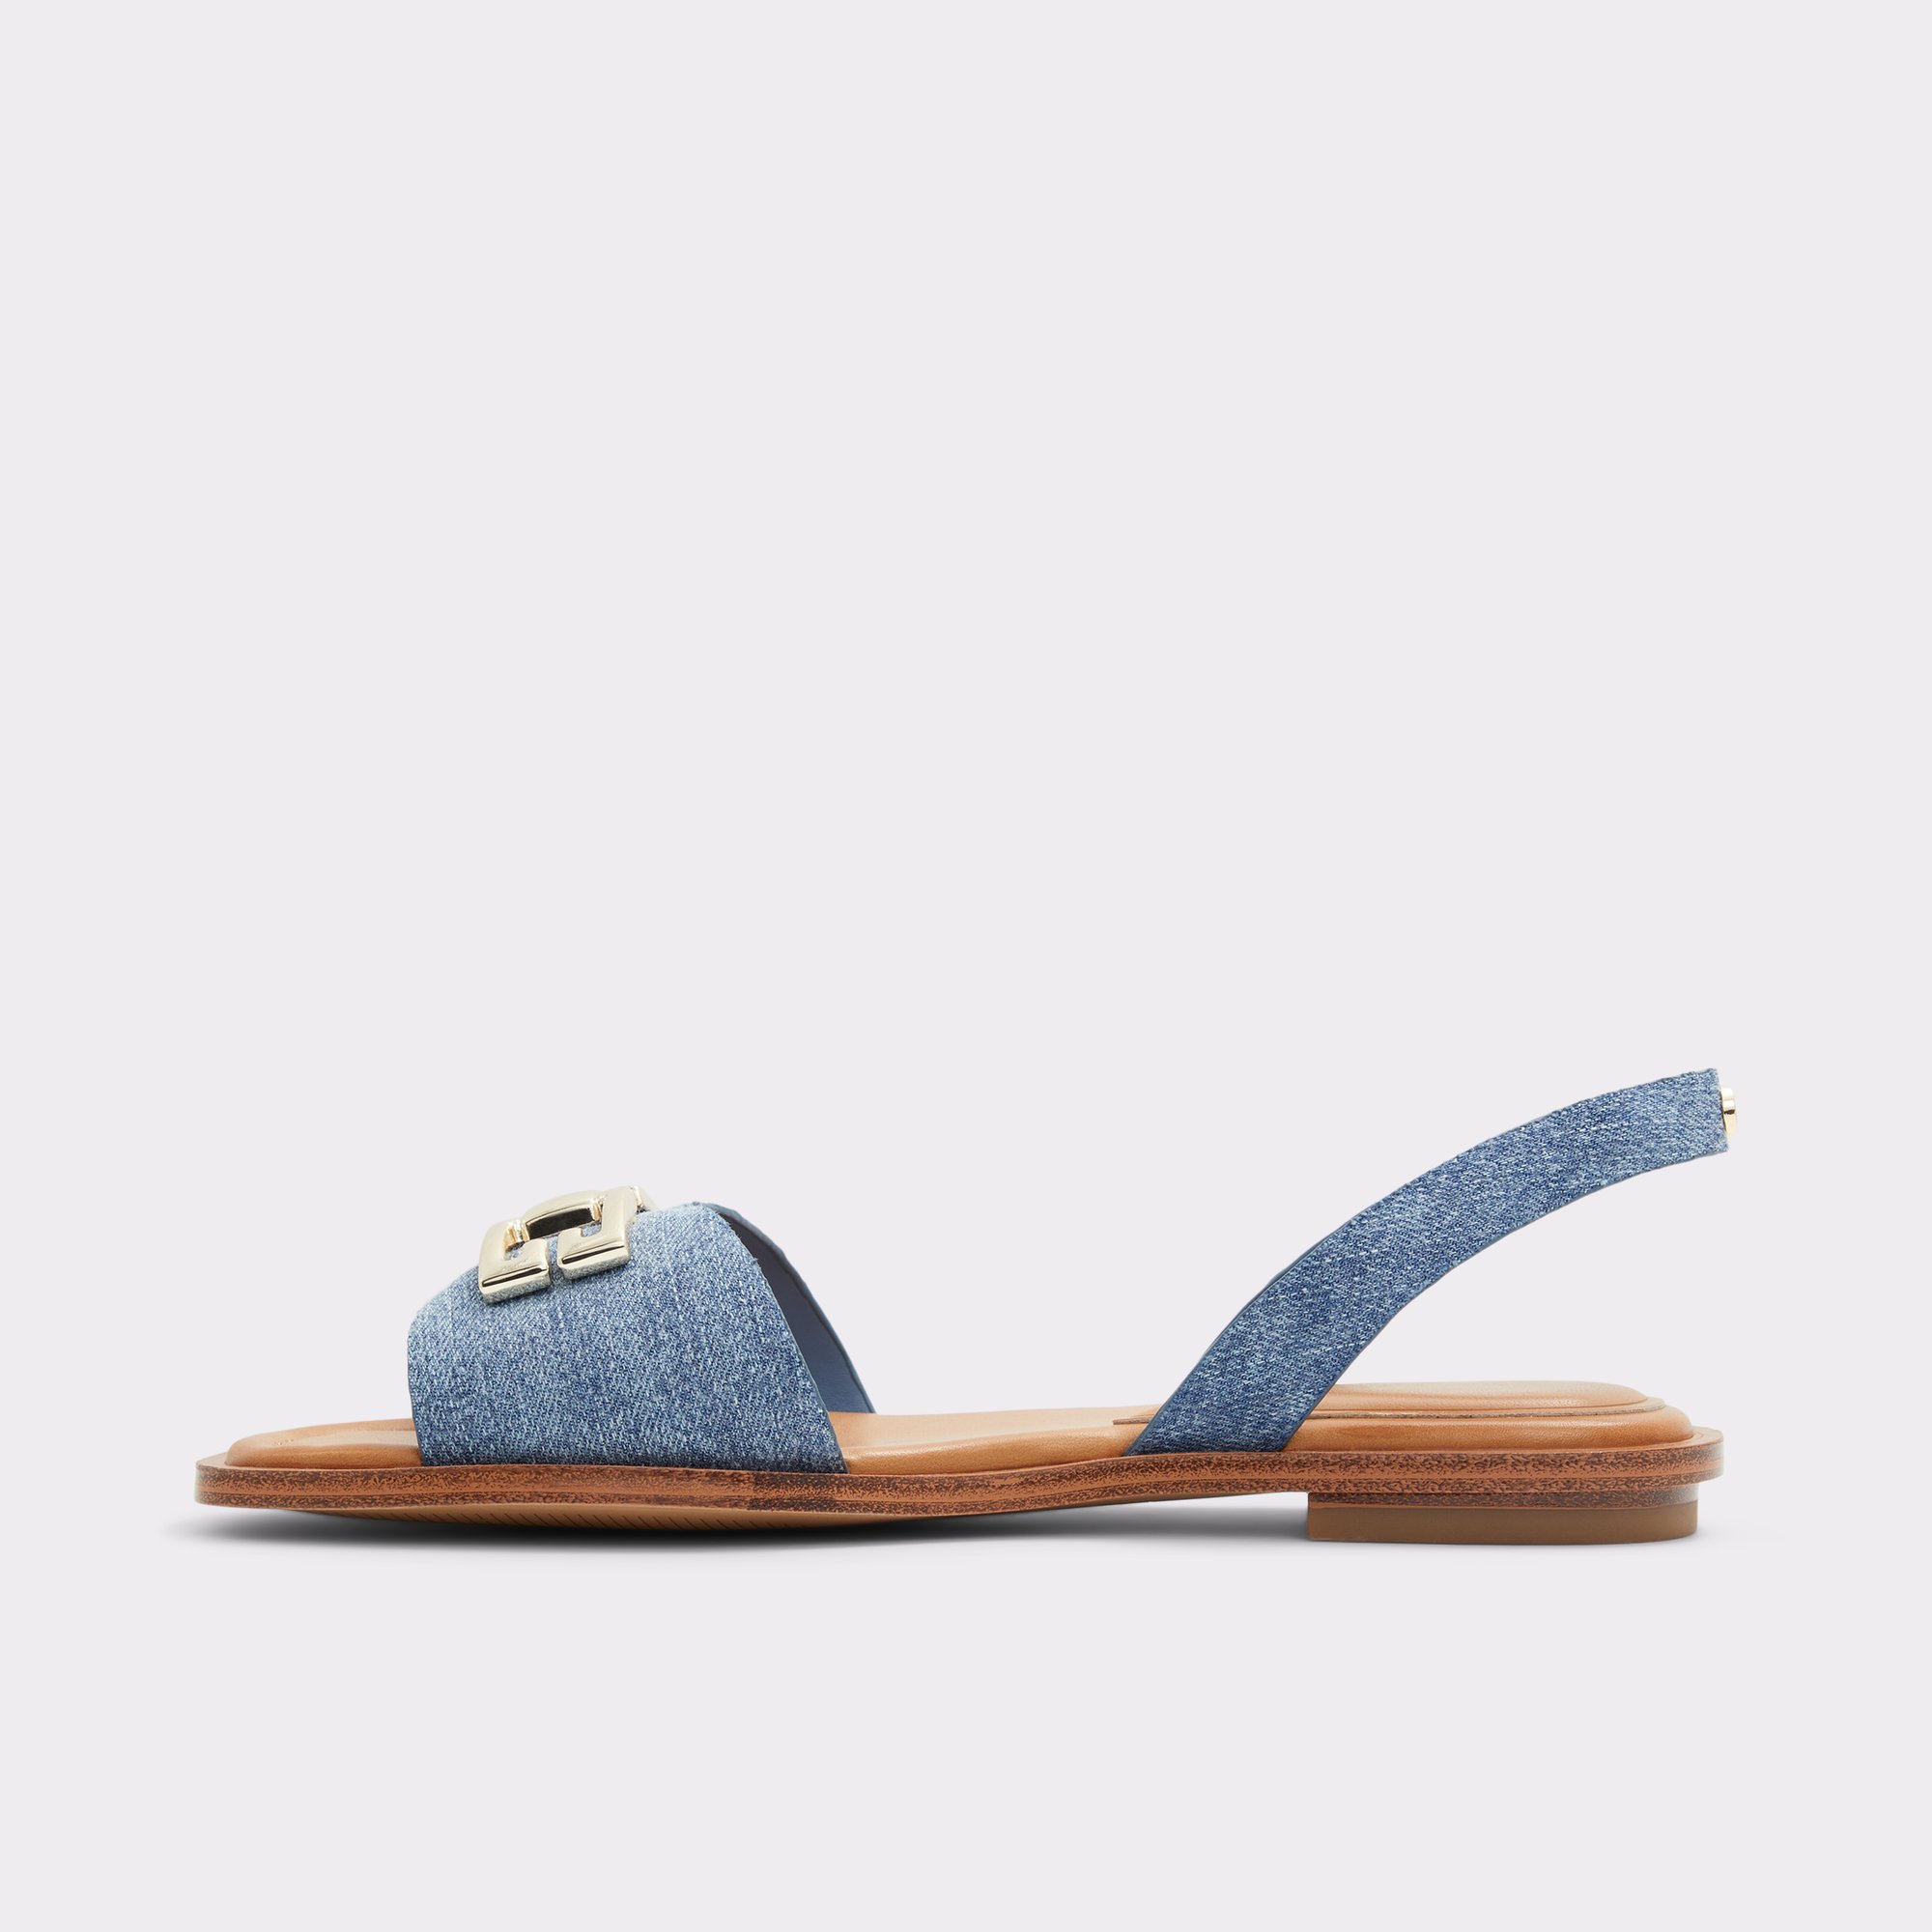 Agreinwan Medium Blue Women's Flat Sandals | ALDO Canada